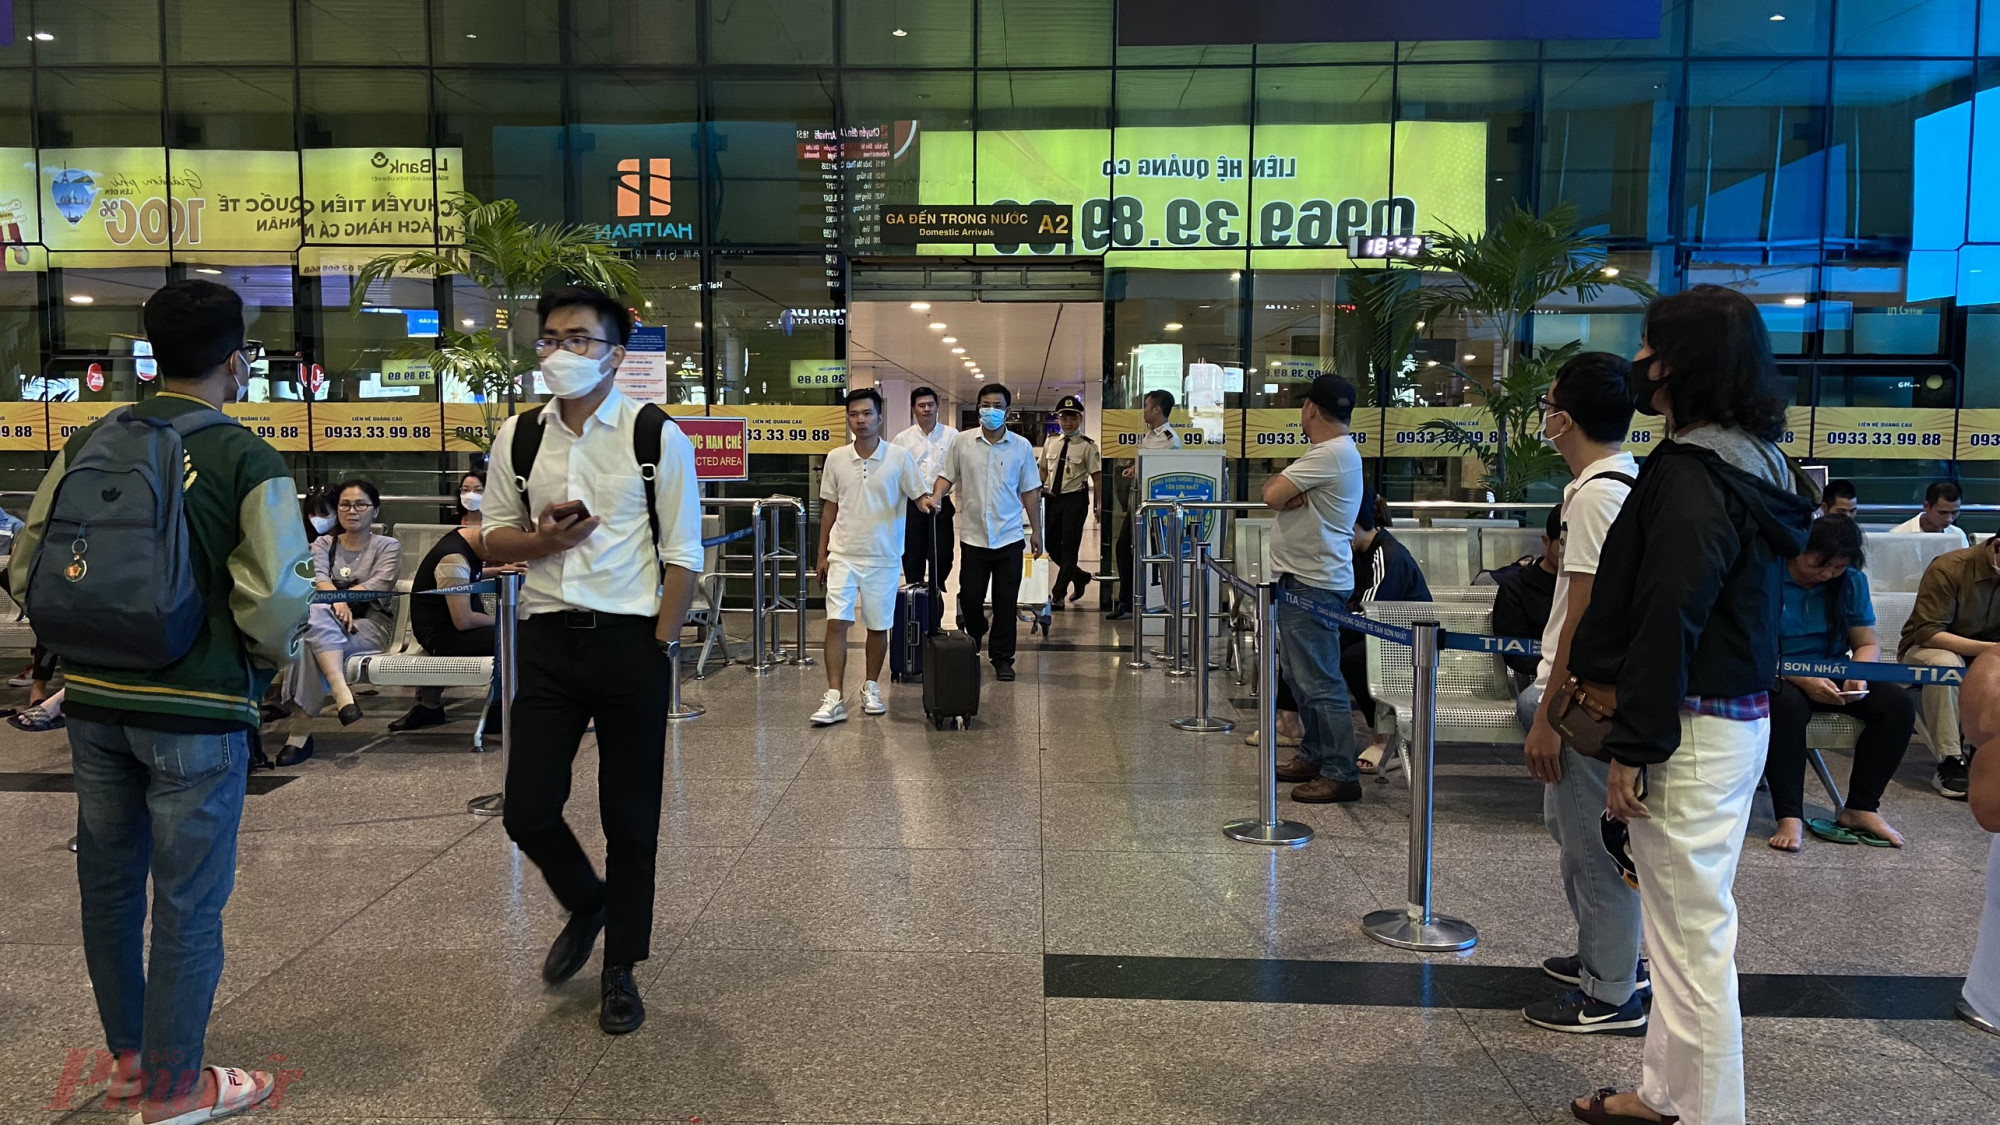 Tại  ga quốc nội, lượng khách ở chiều đi  đông hơn ở nên lực lượng an ninh được tăng cường hỗ trợ phân luồng. Bên cạnh đó, sân bay cũng tăng cường thêm nhân viên để hỗ trợ hướng dẫn hành khách.